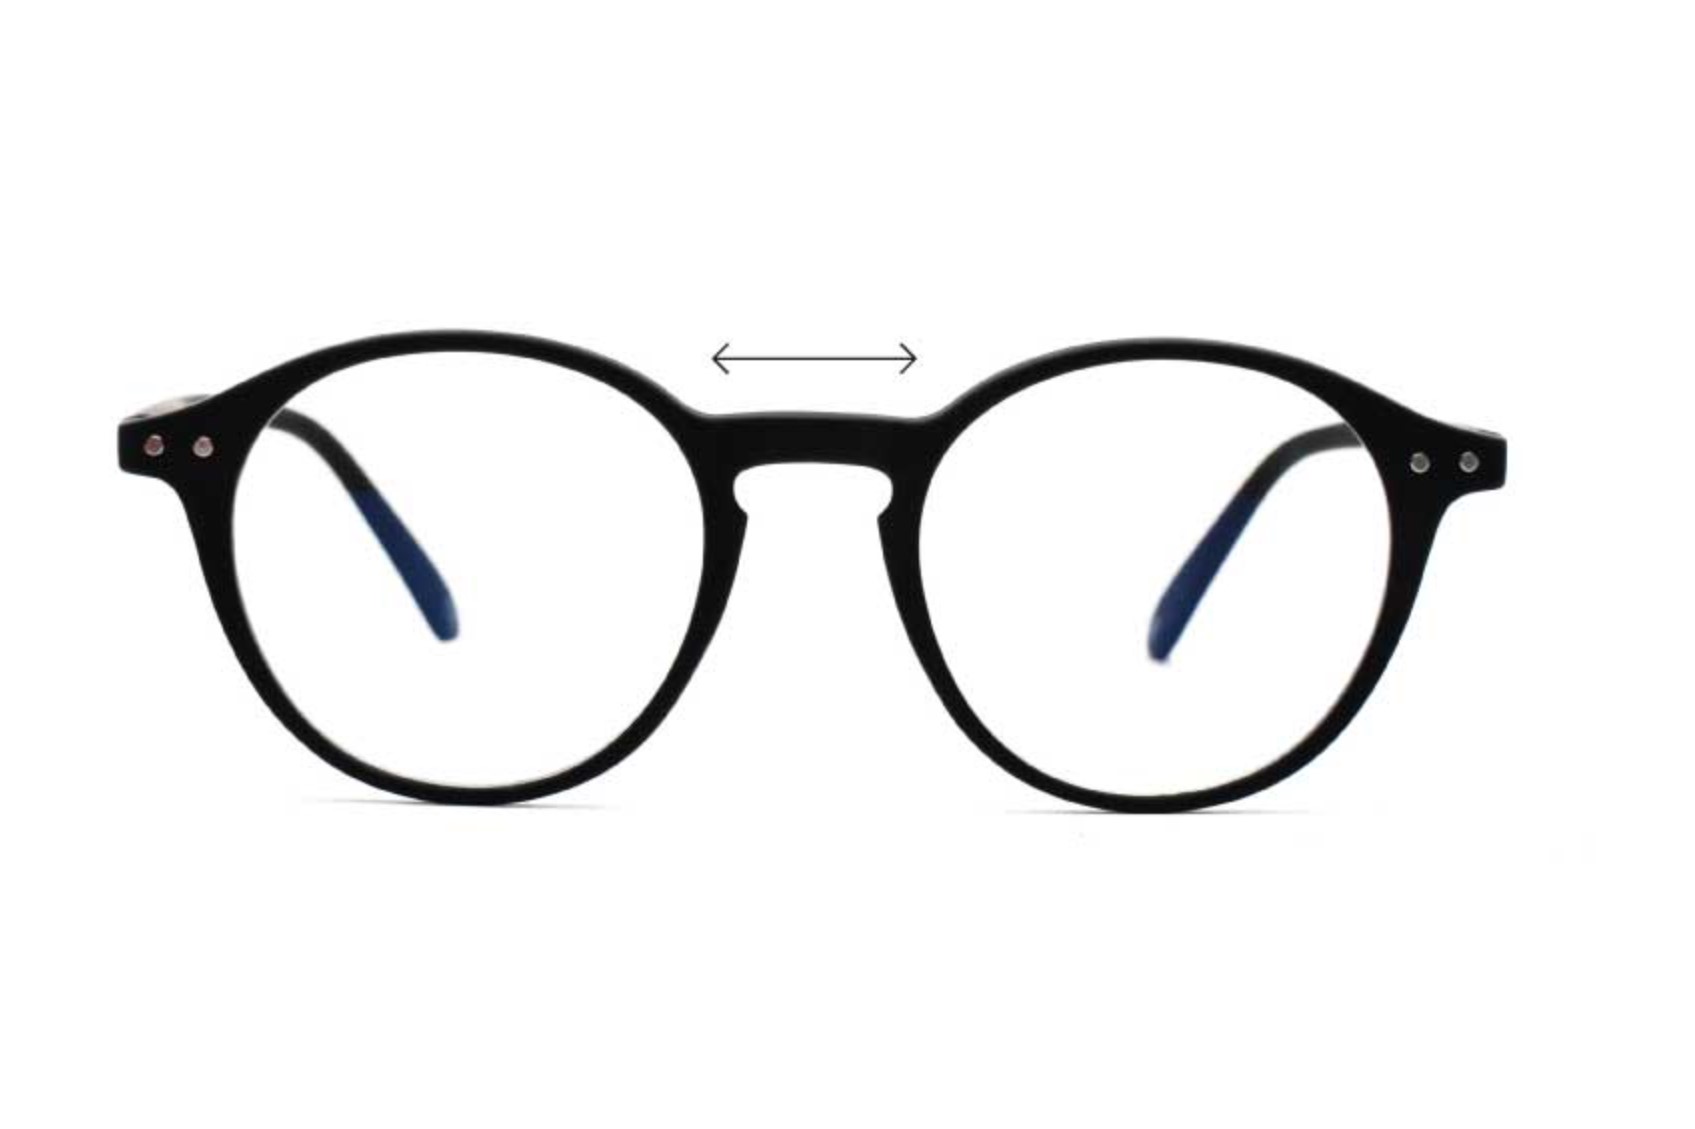 – Luca GEN 8 w Transition Glasses, Women's